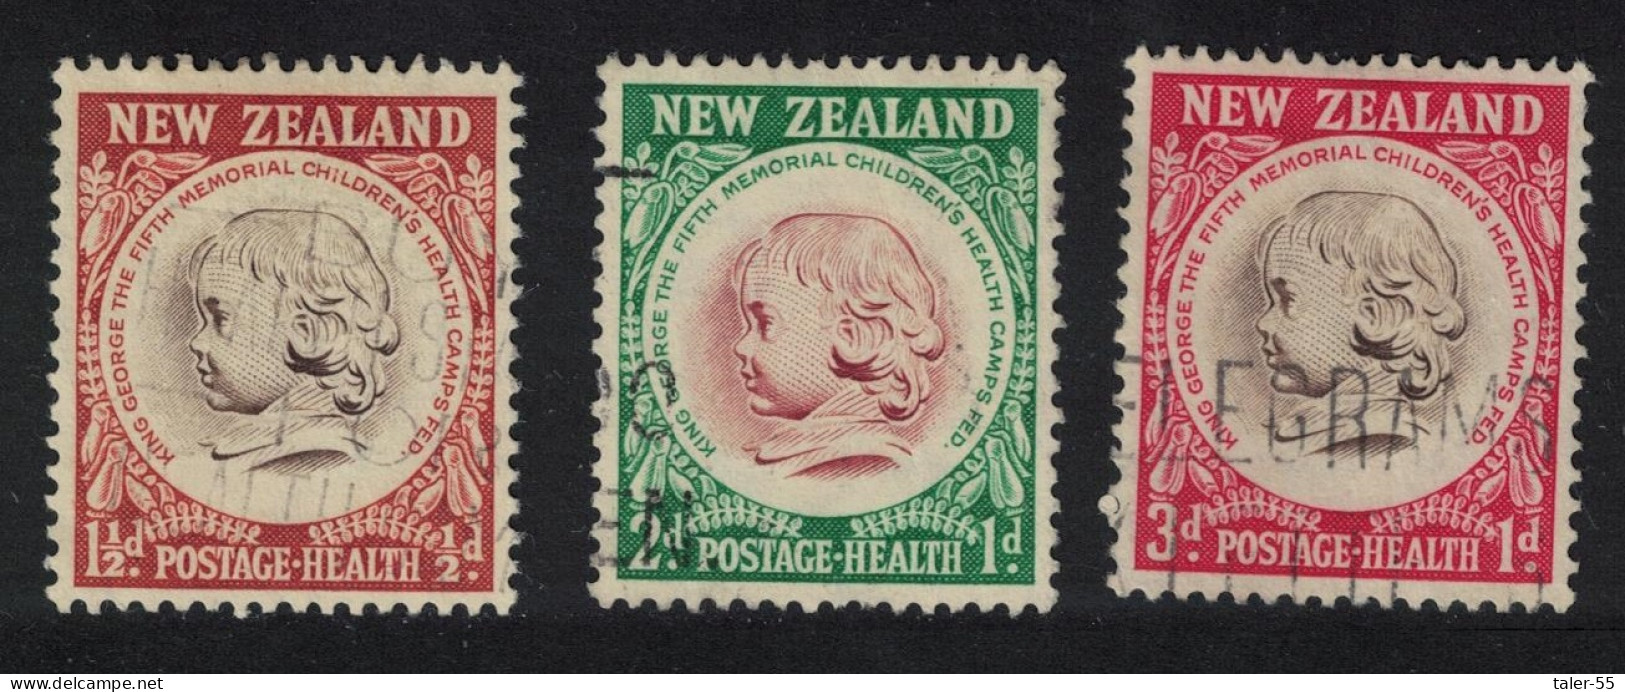 New Zealand Health Camps Federation Emblem 3v 1955 Canc SG#742-744 - Gebruikt